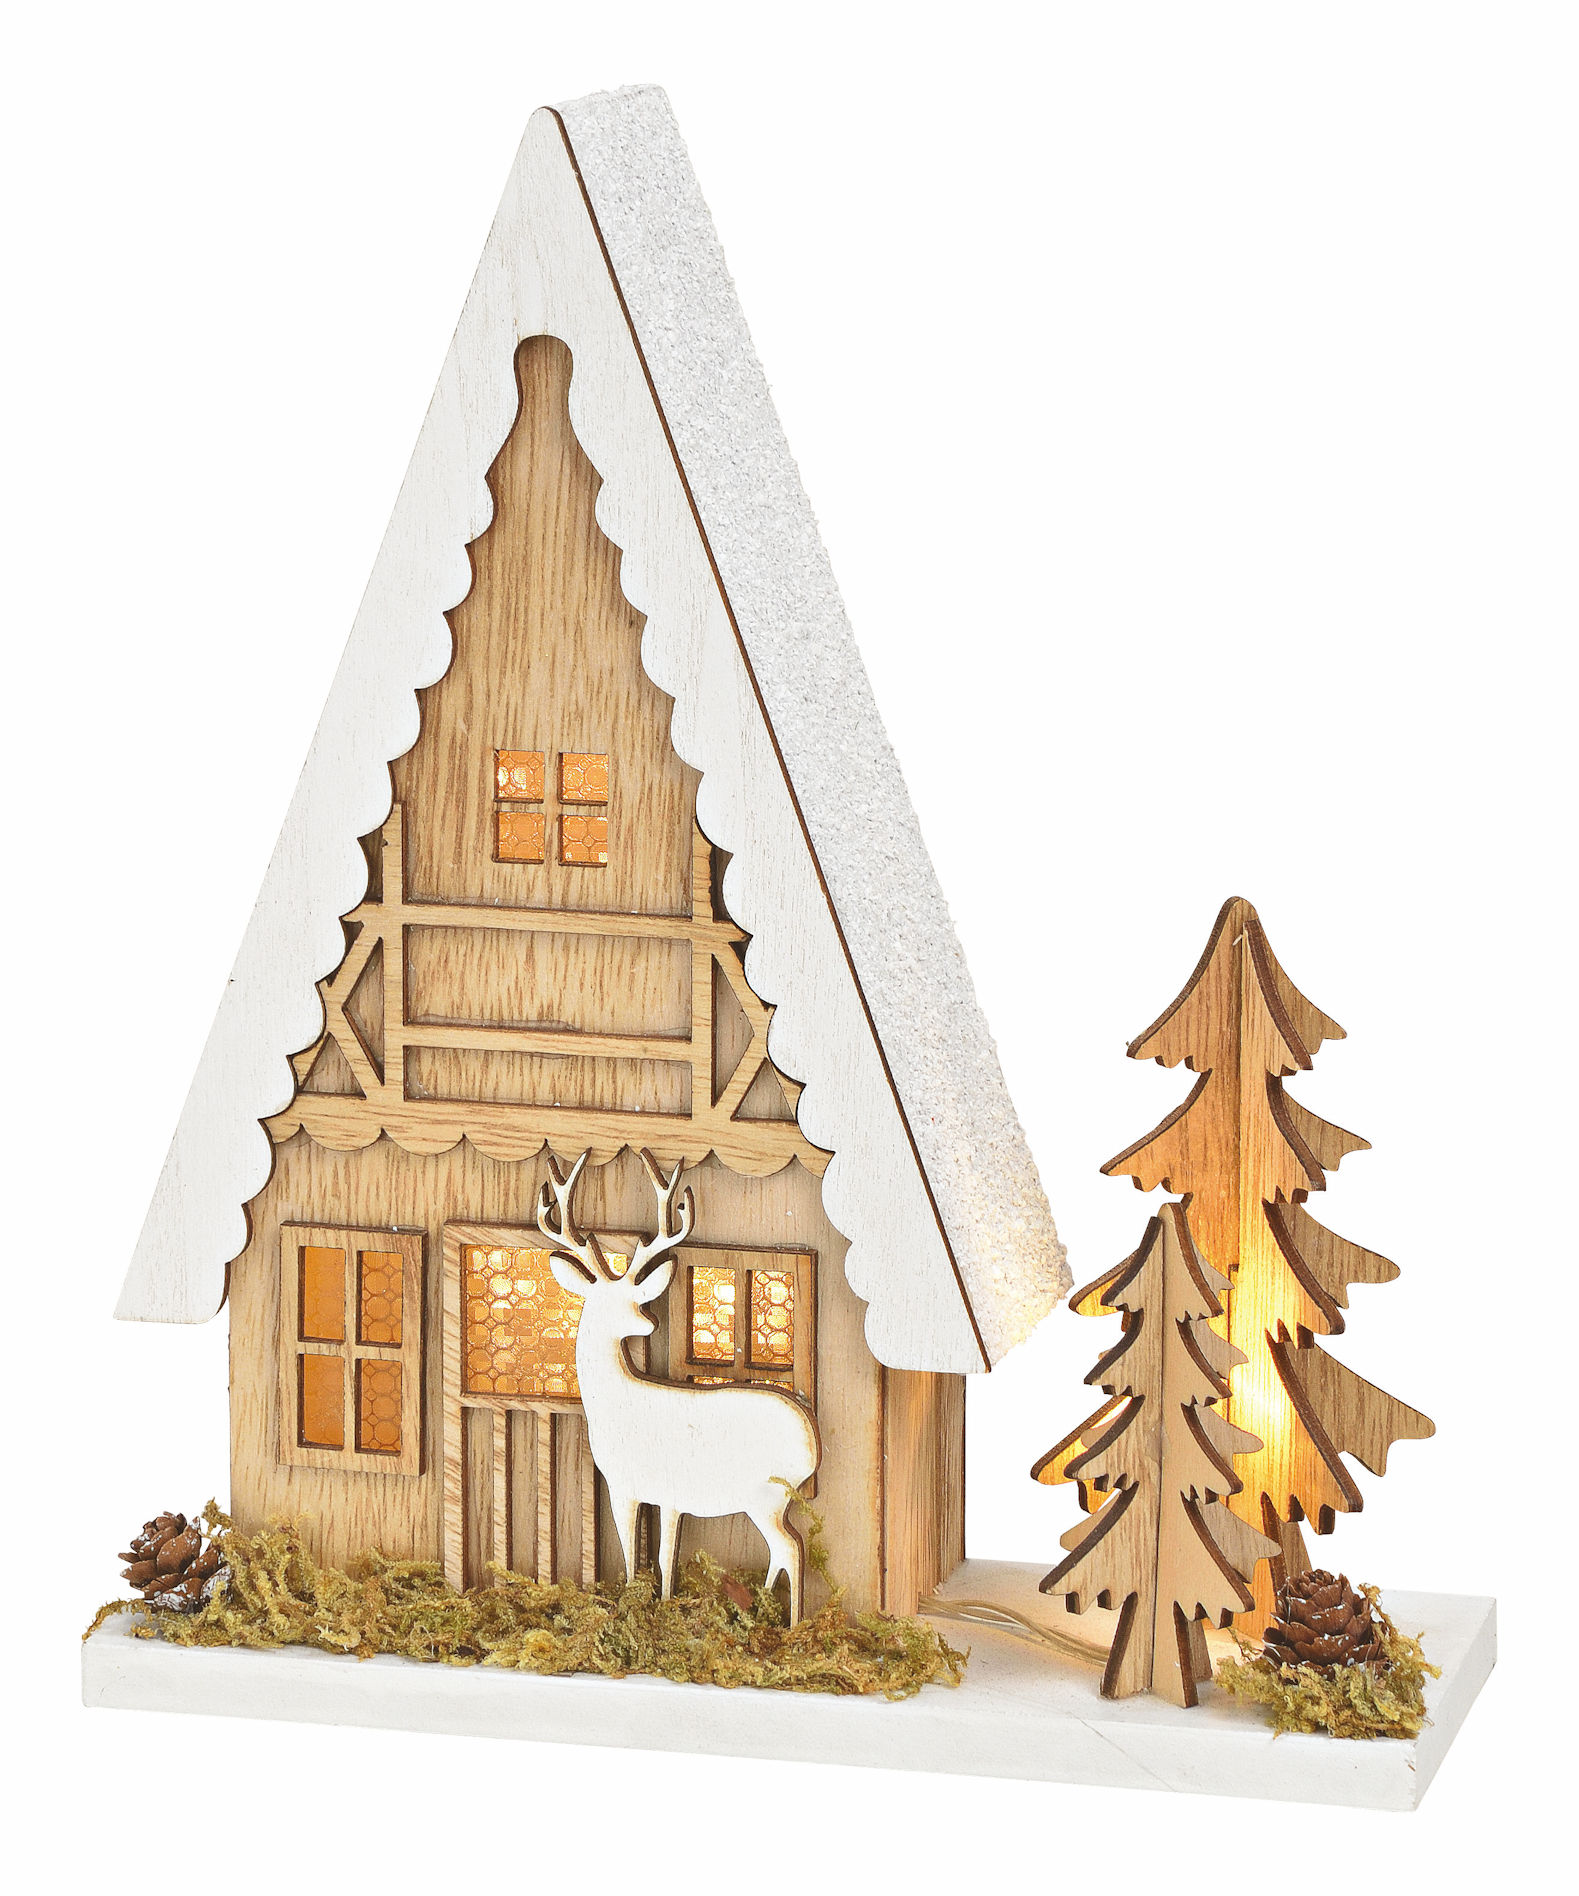 Holz Lichthaus 21 cm zum hängen - 3 LED - Weihnachts Tisch Deko Haus beleuchtet